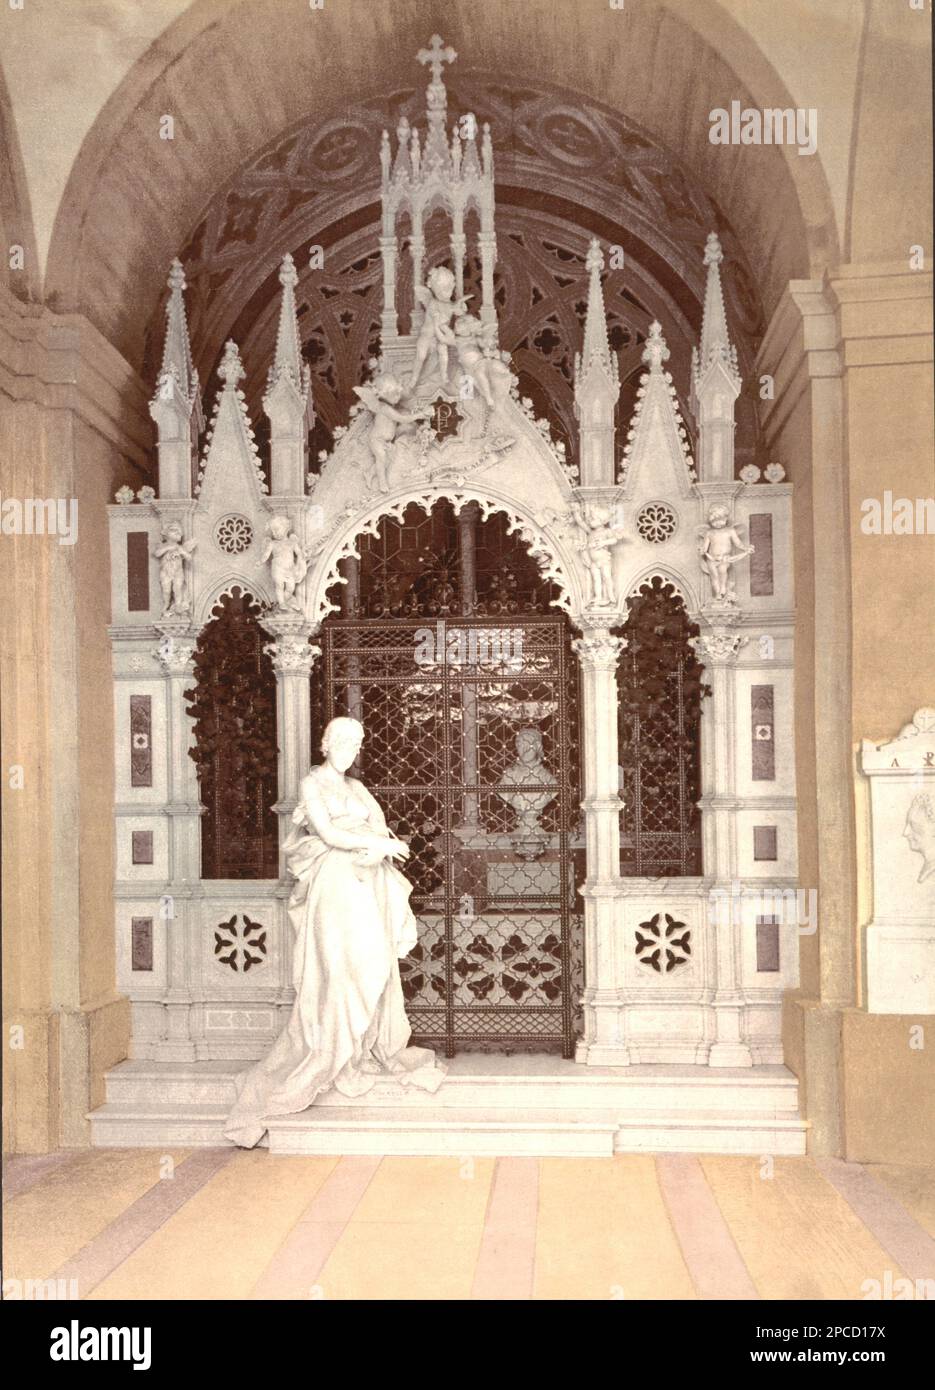 1905 environ , GENOVA, ITALIE : Une tombe familiale à Camposanto di STAGLIENO . Couleurs d'impression Photochrome éditées par Detroit Publishing Co. - GÊNES - LIGURIE - ITALIA - FOTO STORICHE - HISTOIRE - GEOGRAFIA - GÉOGRAPHIE - ARCHITETURA - ARCHITECTURE - - CIMITERO - CAMPO SANTO - CEMENTERY - CIMETIÈRE - ARTS - ARTE - STILE NEOGOTICO - STYLE NÉO-GOTHIQUE - COFFRE FUNÉRAIRE - TOMBA - TOMBE - TOMBEAU -- -- Archivio GBB Banque D'Images